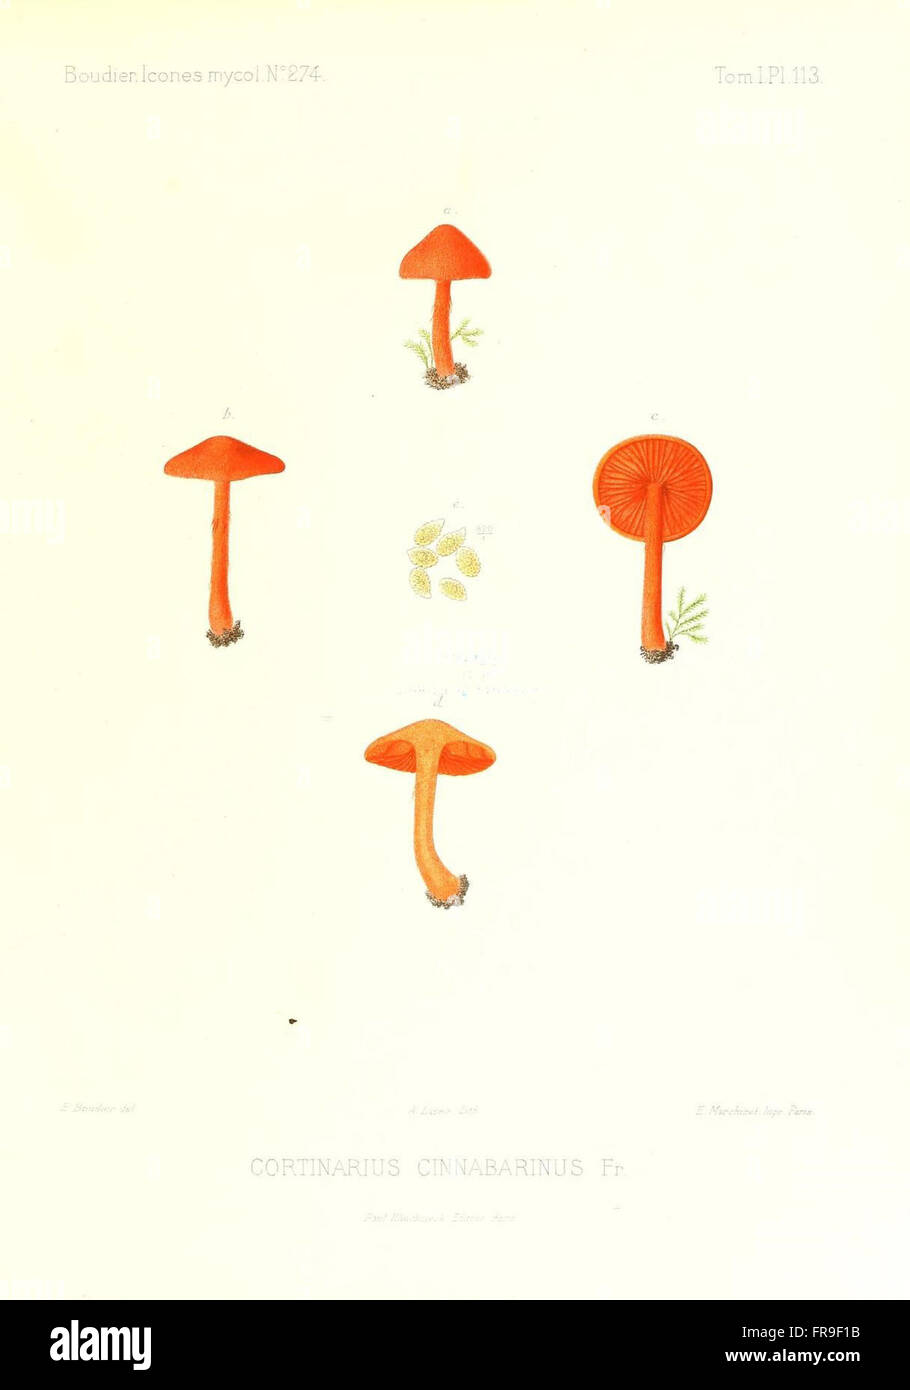 Icones mycologicC3A6, ou Iconographie des champignons de France principalement Discomycetes (Pl. 113) Stock Photo